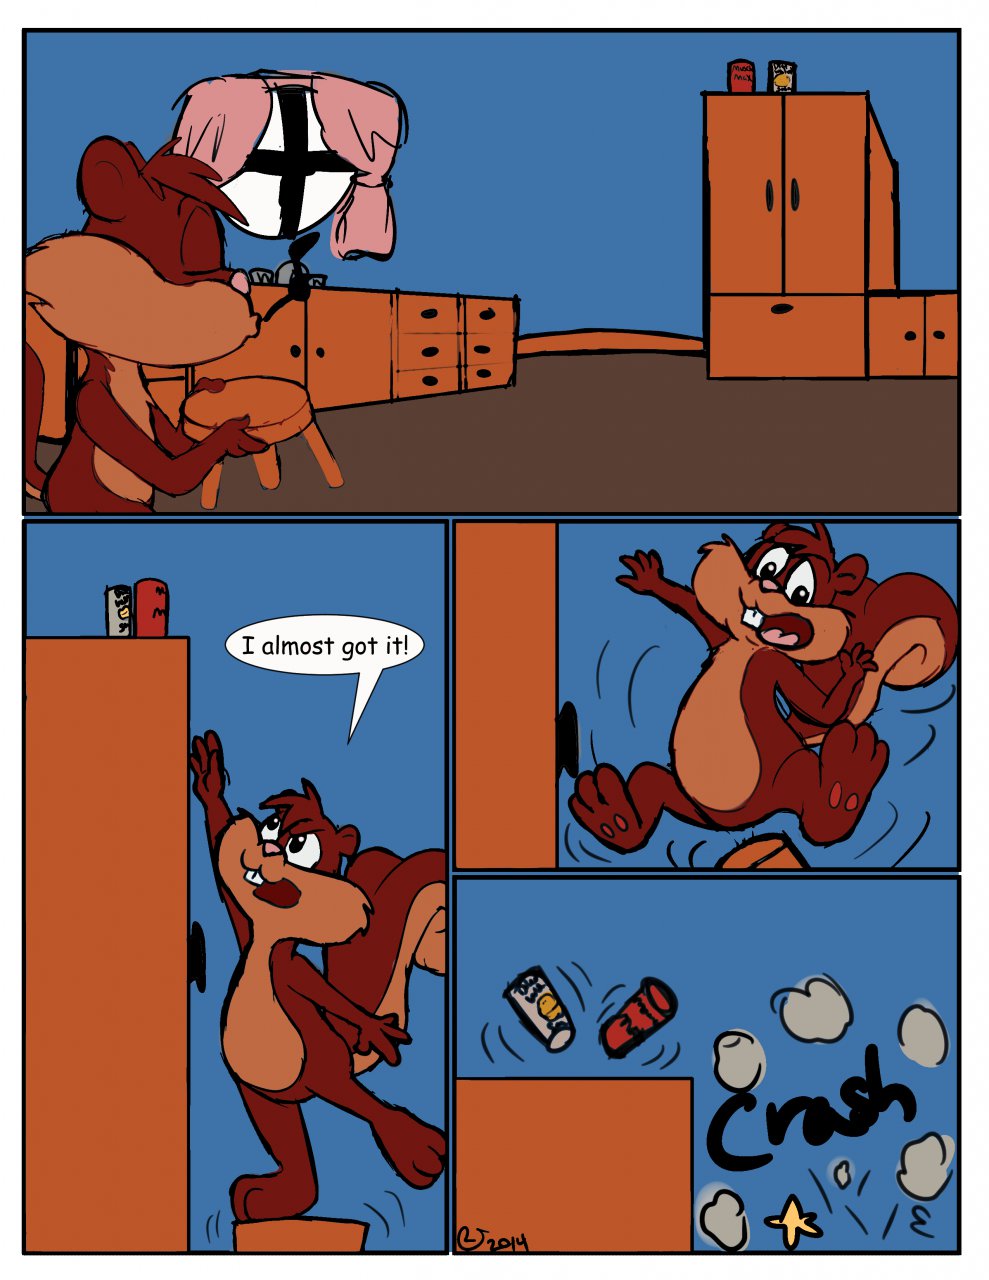 Super Sized Squirrel Page 2/5 By CaseyLJones